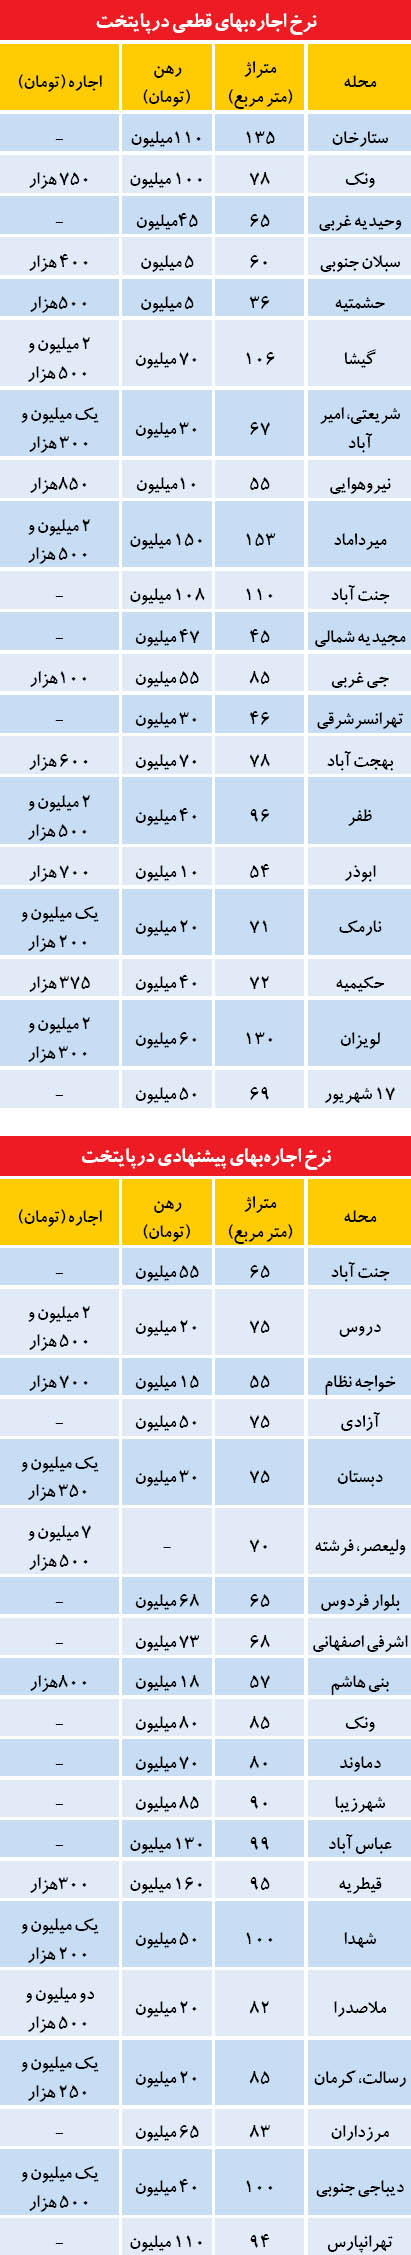 رهن و اجاره پاییزی در تهران (جدول)